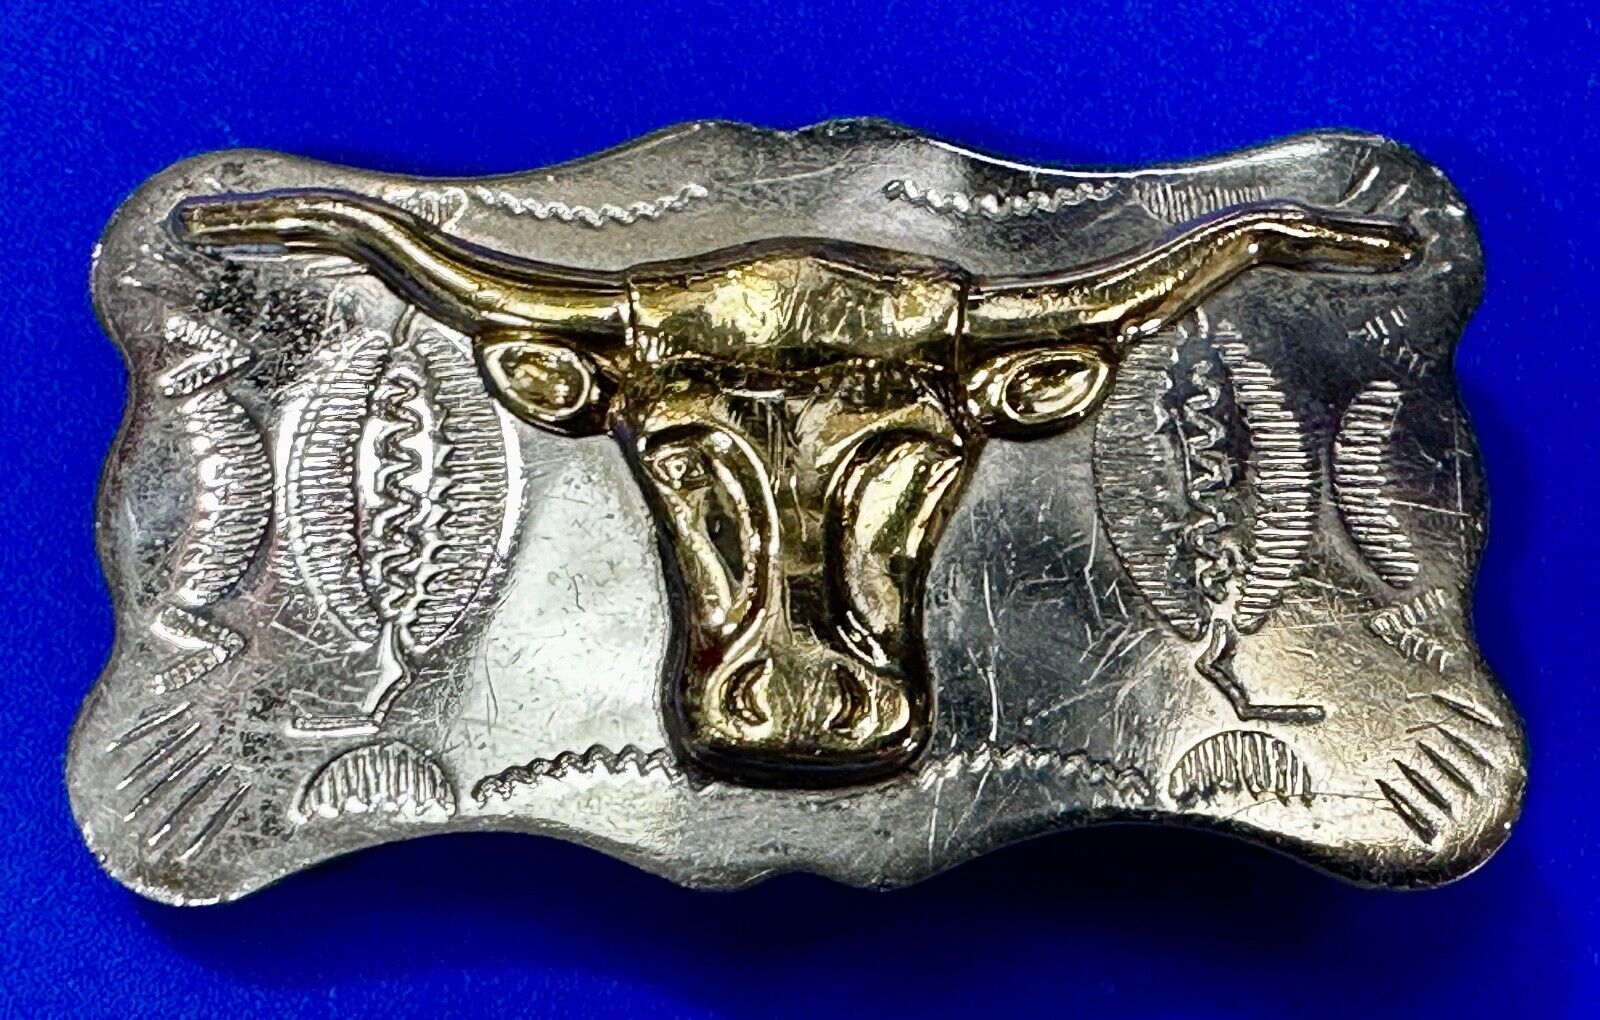 Raised Texas Longhorn Steer Head Vintage Nickel Silver Western Style Belt Buckle